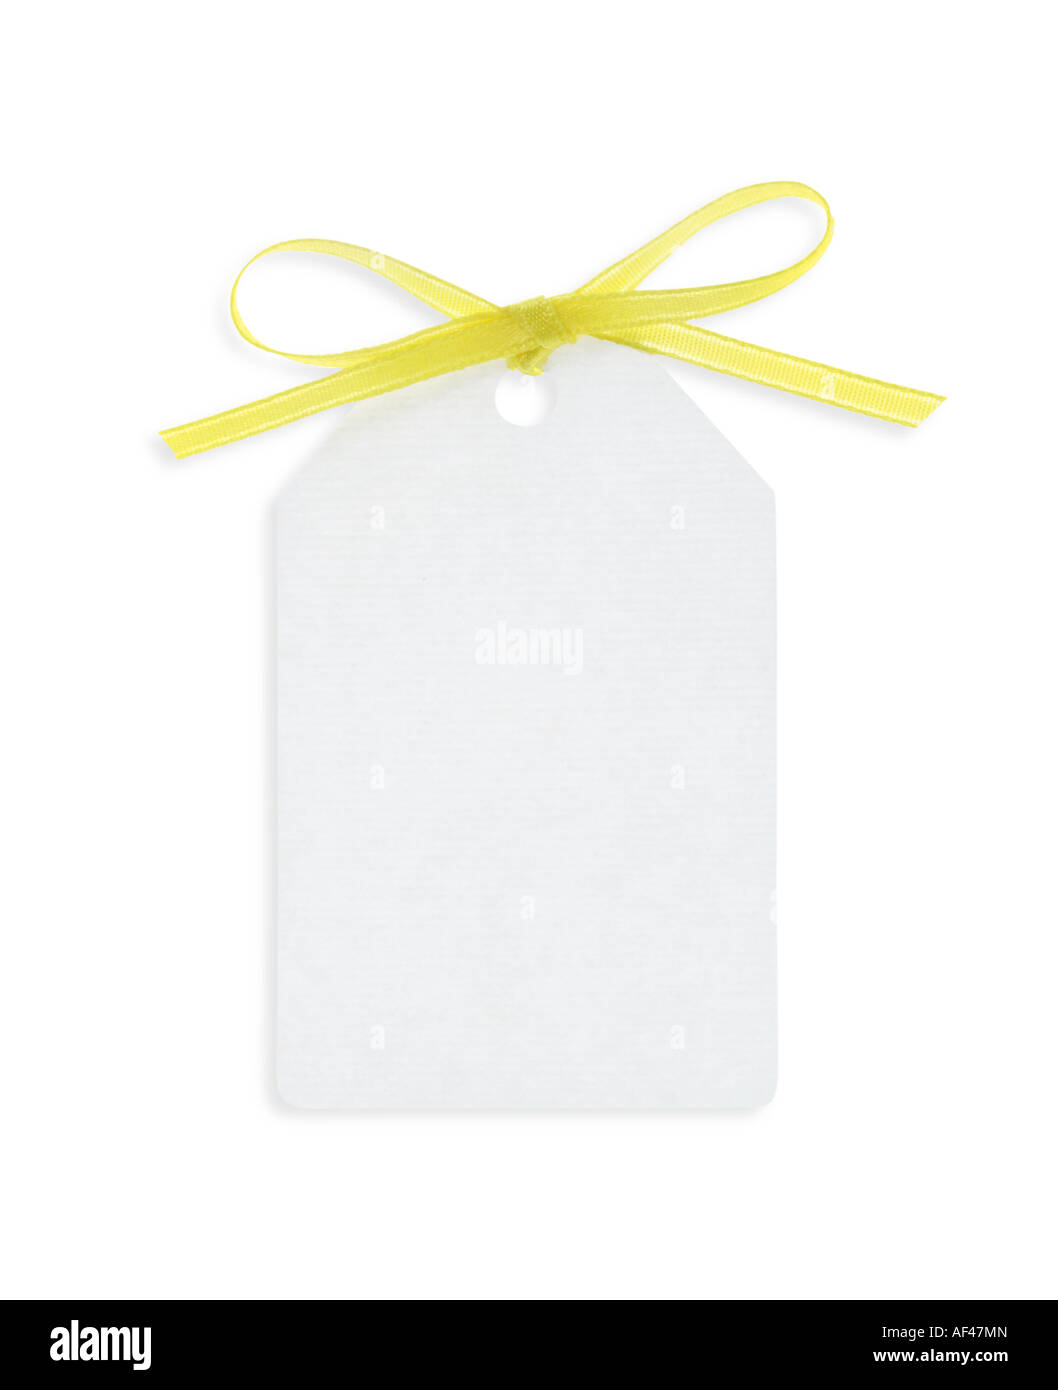 Une étiquette-cadeau blanc vide attaché avec du ruban jaune Banque D'Images